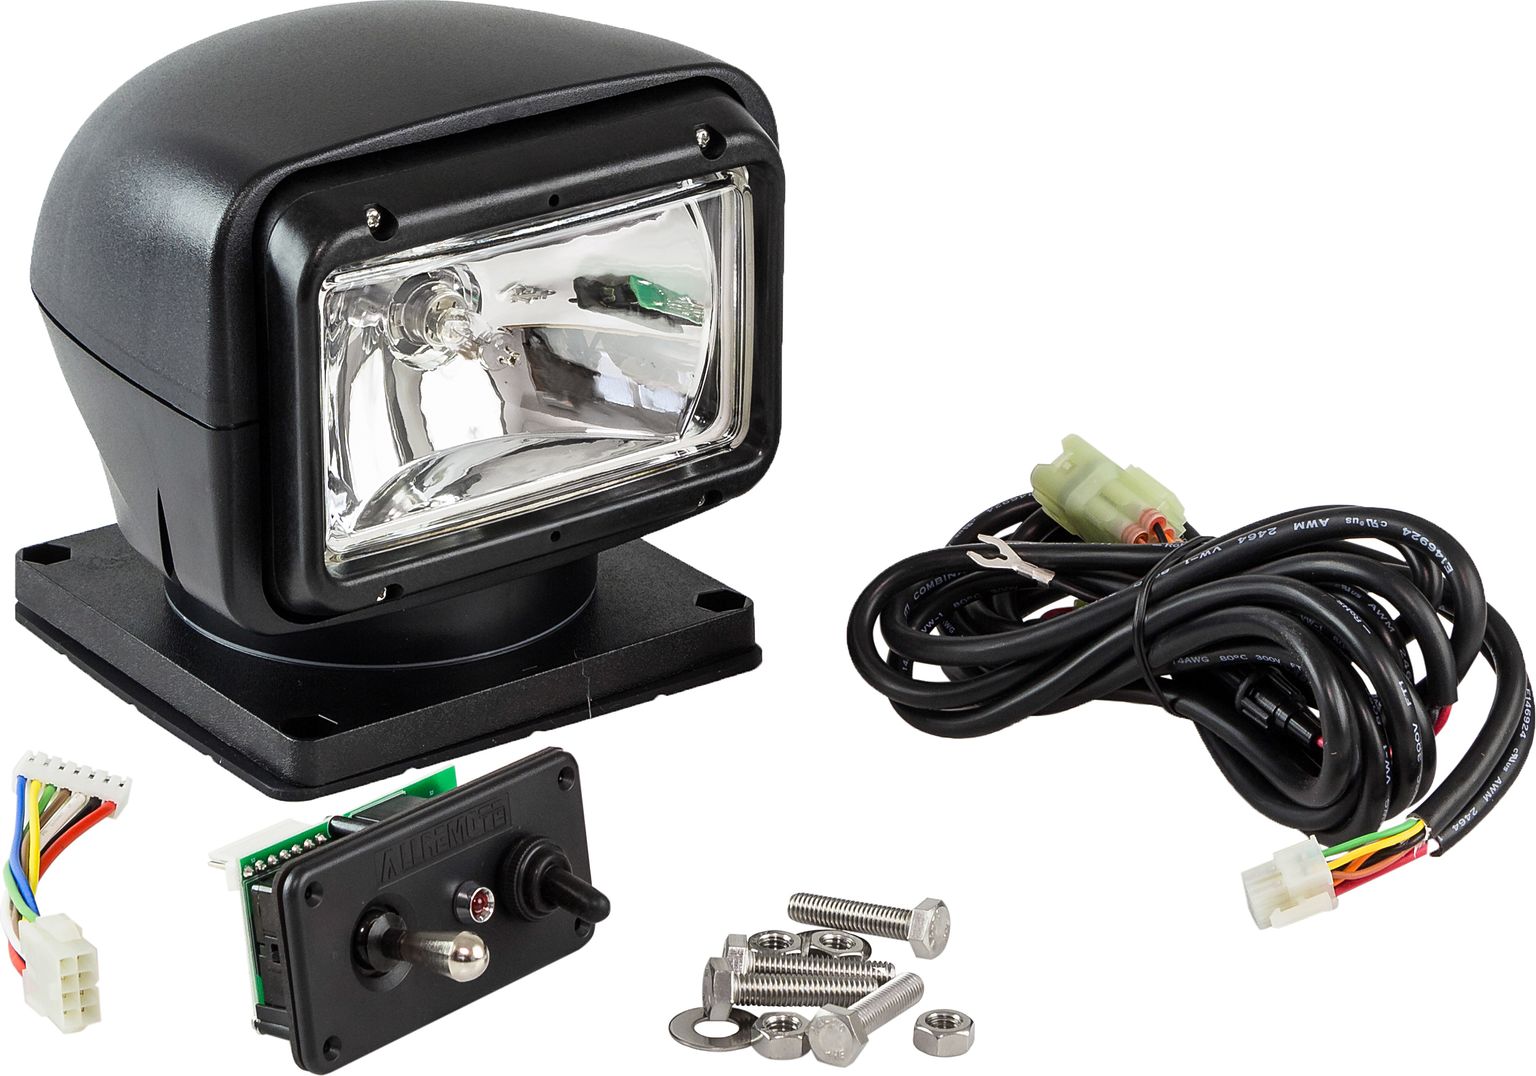 Прожектор с дистанционным управлением, черный корпус, галоген, джойстик, модель 310 SL31051DCB12VSD картина на стекле модель в короне ag 40 216 40x50 см